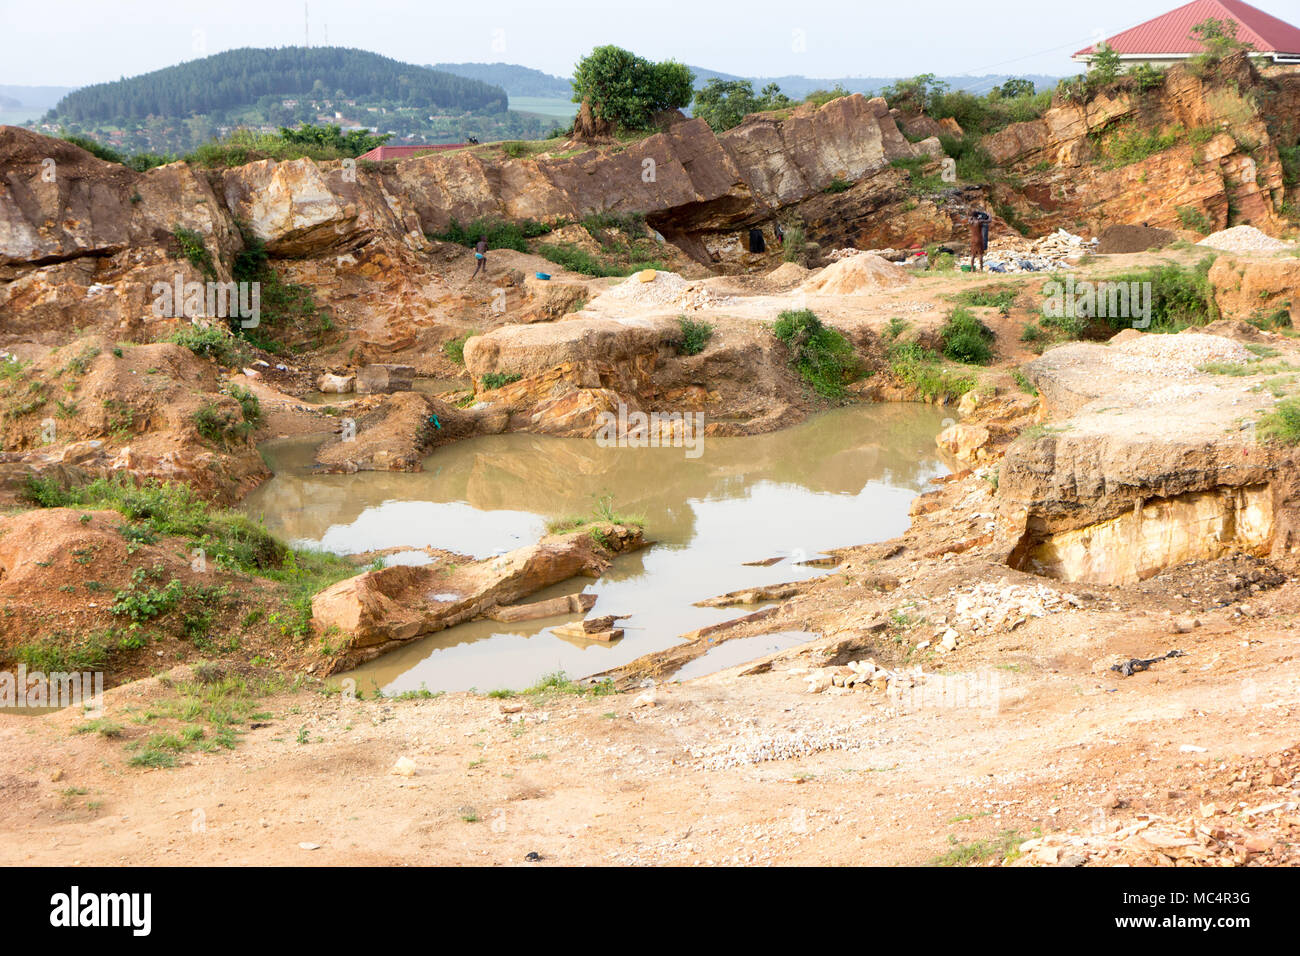 Un petit lac ou d'une grande flaque d'eau dans une carrière en Ouganda, juin 2017. Banque D'Images